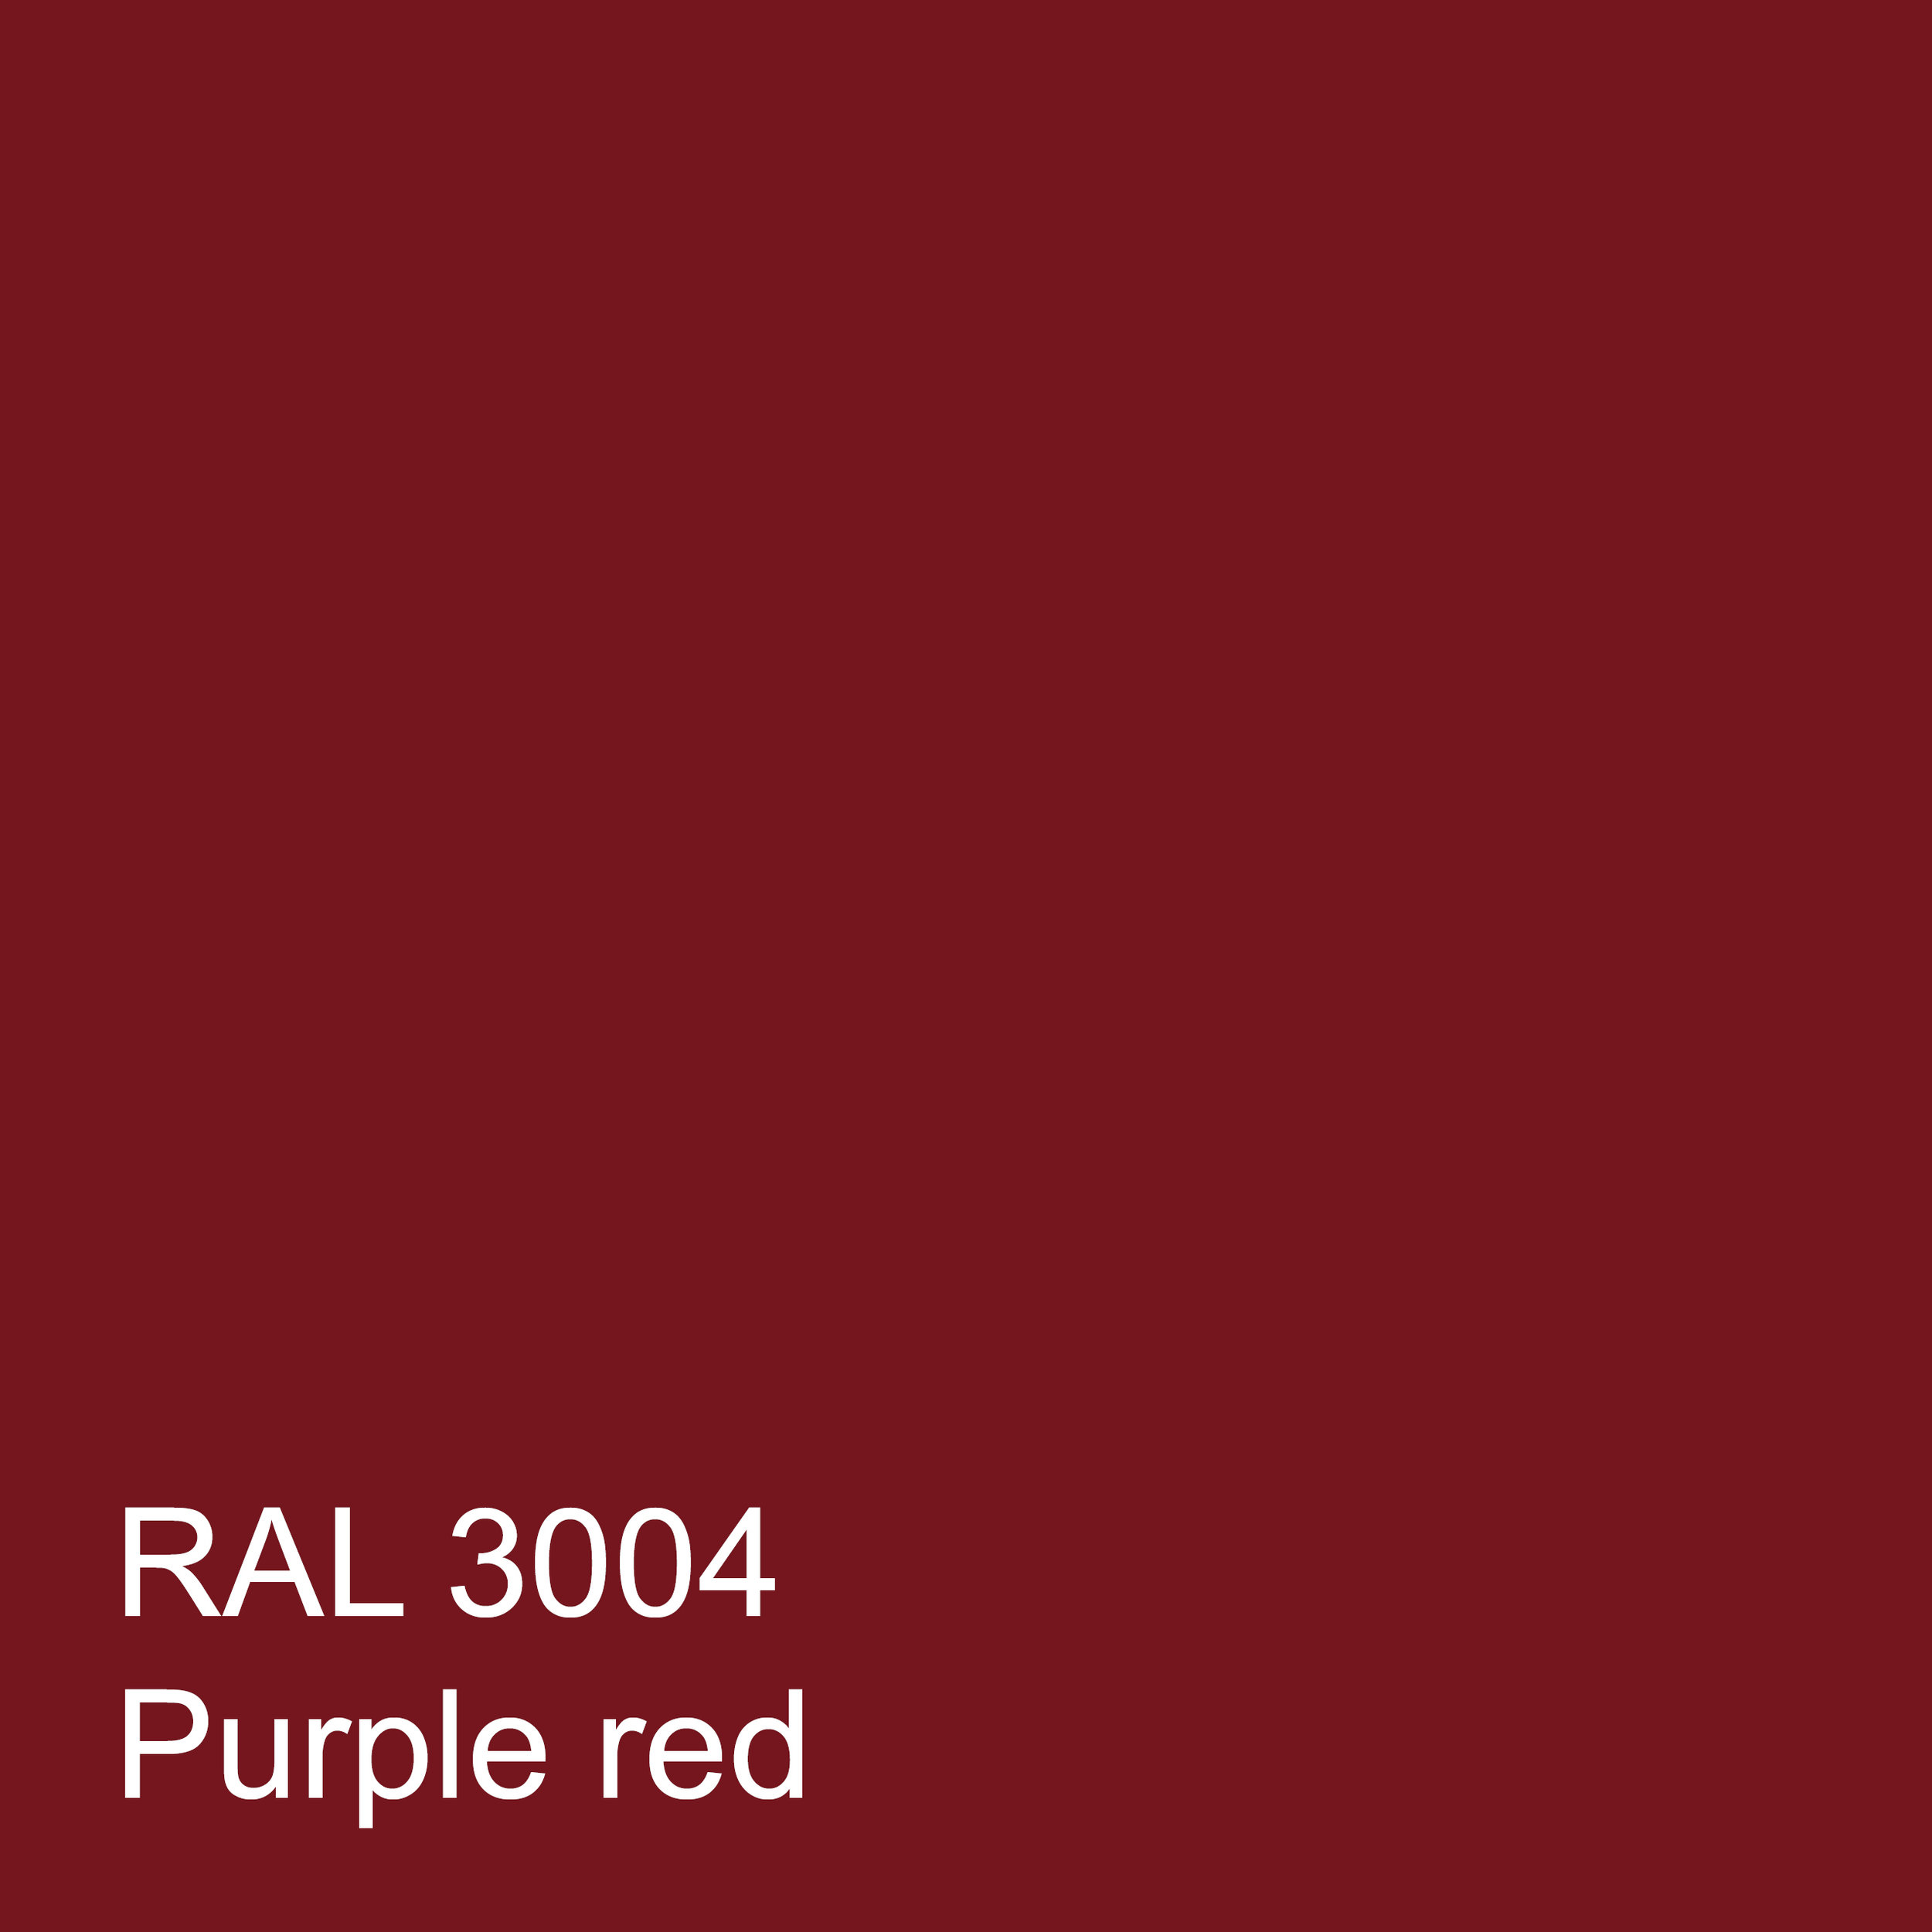 RAL 3004 PURPLE RED.jpg